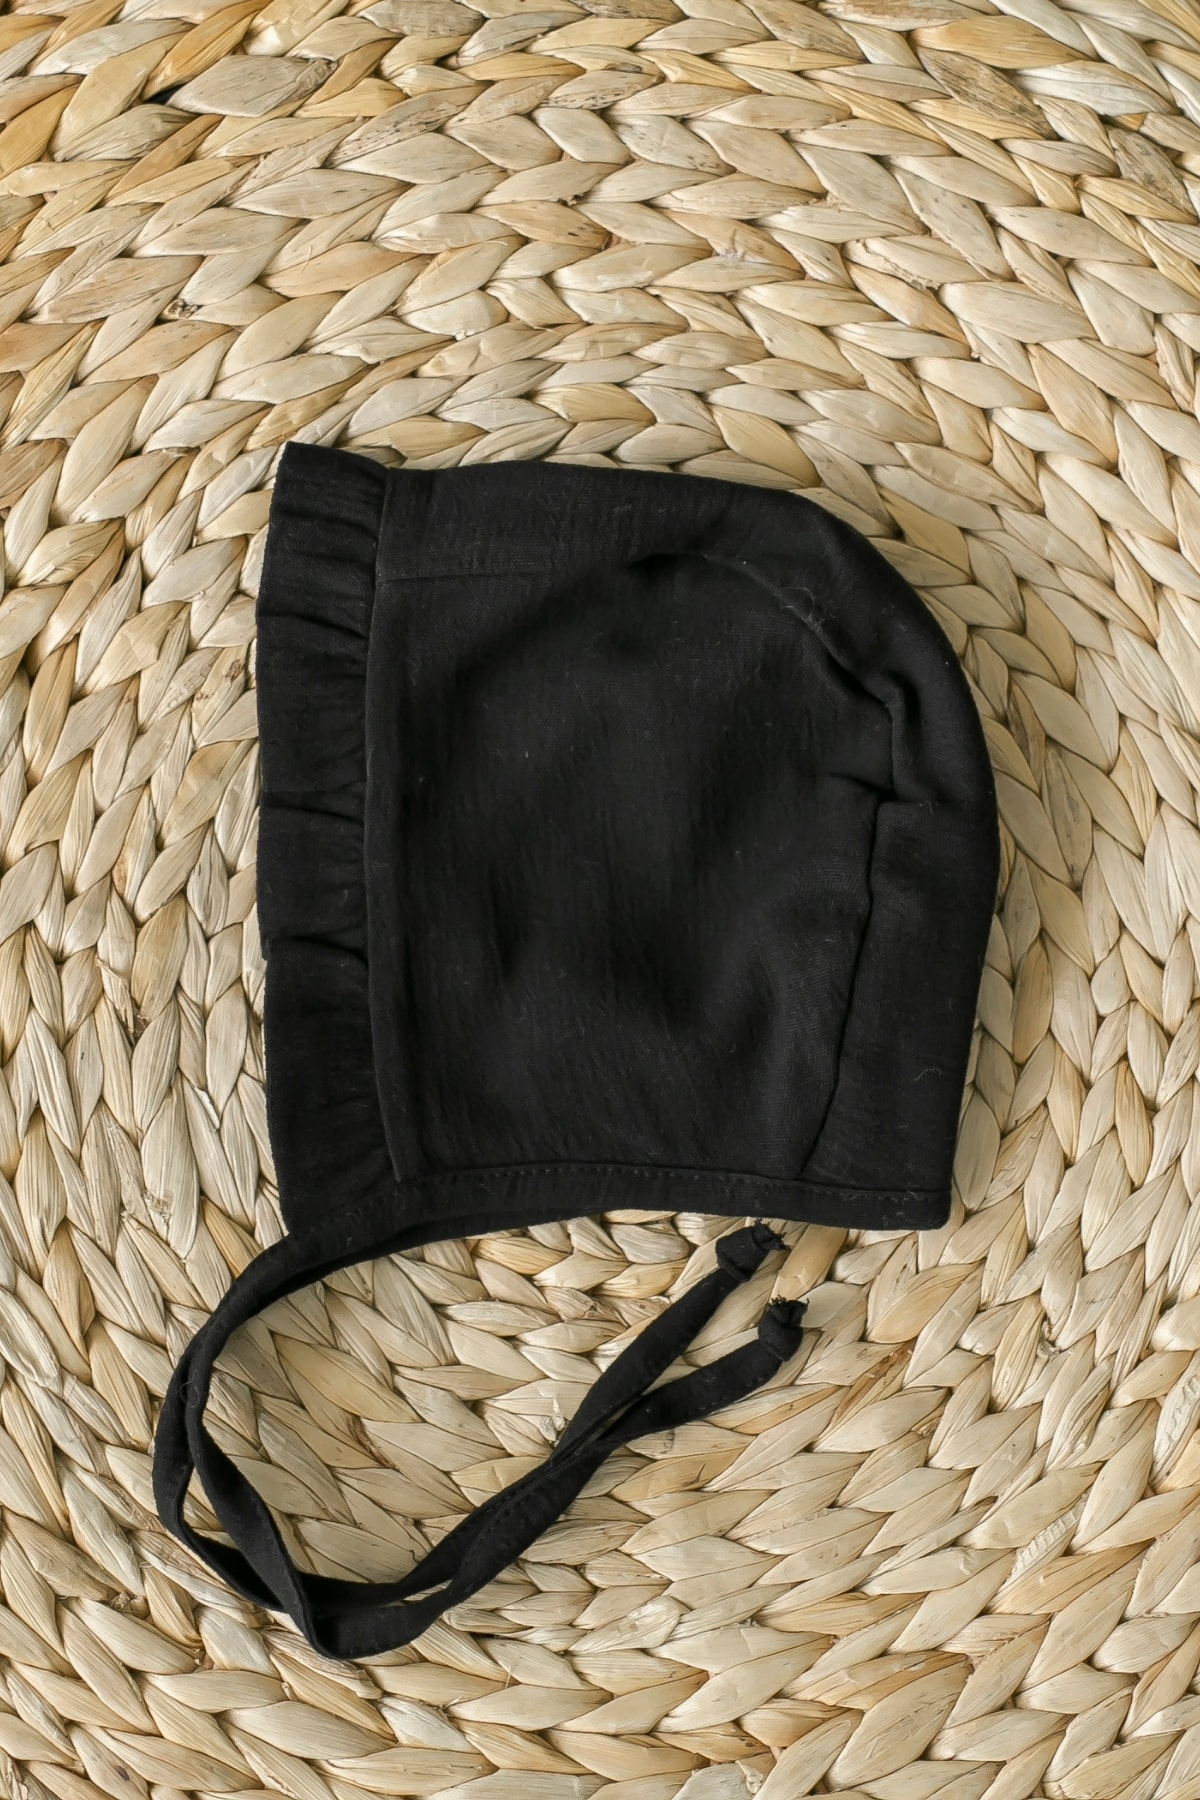 Şile Bezi Bebek Siyah Bonnet Fırfırlı Müslin Şapka